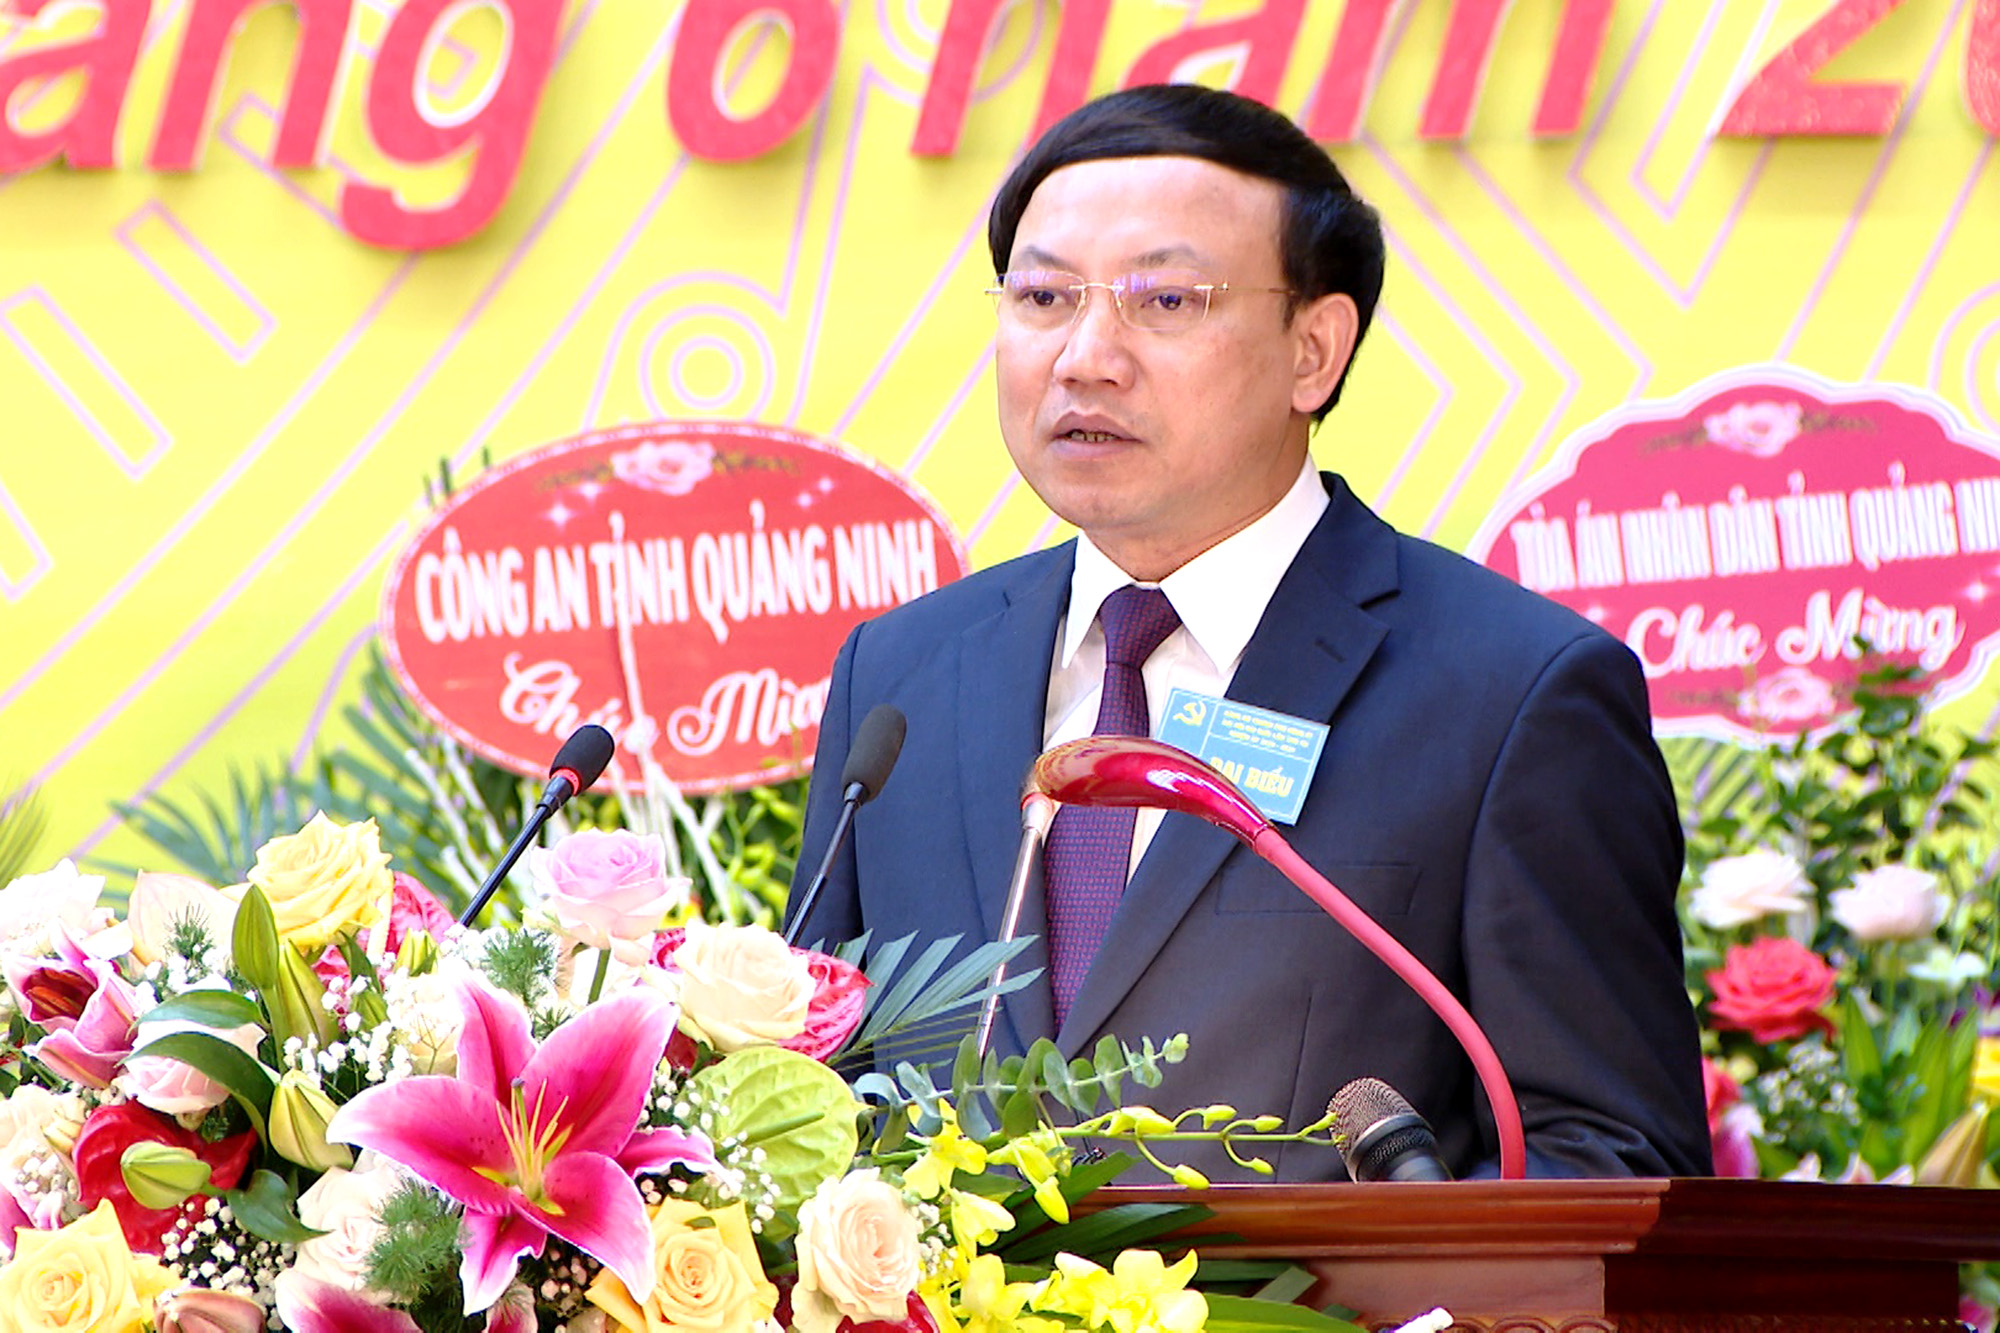 Đồng chí Nguyễn Xuân Ký, Bí thư Tỉnh ủy, Chủ tịch HĐND tỉnh, phát biểu chỉ đạo tại đại hội.